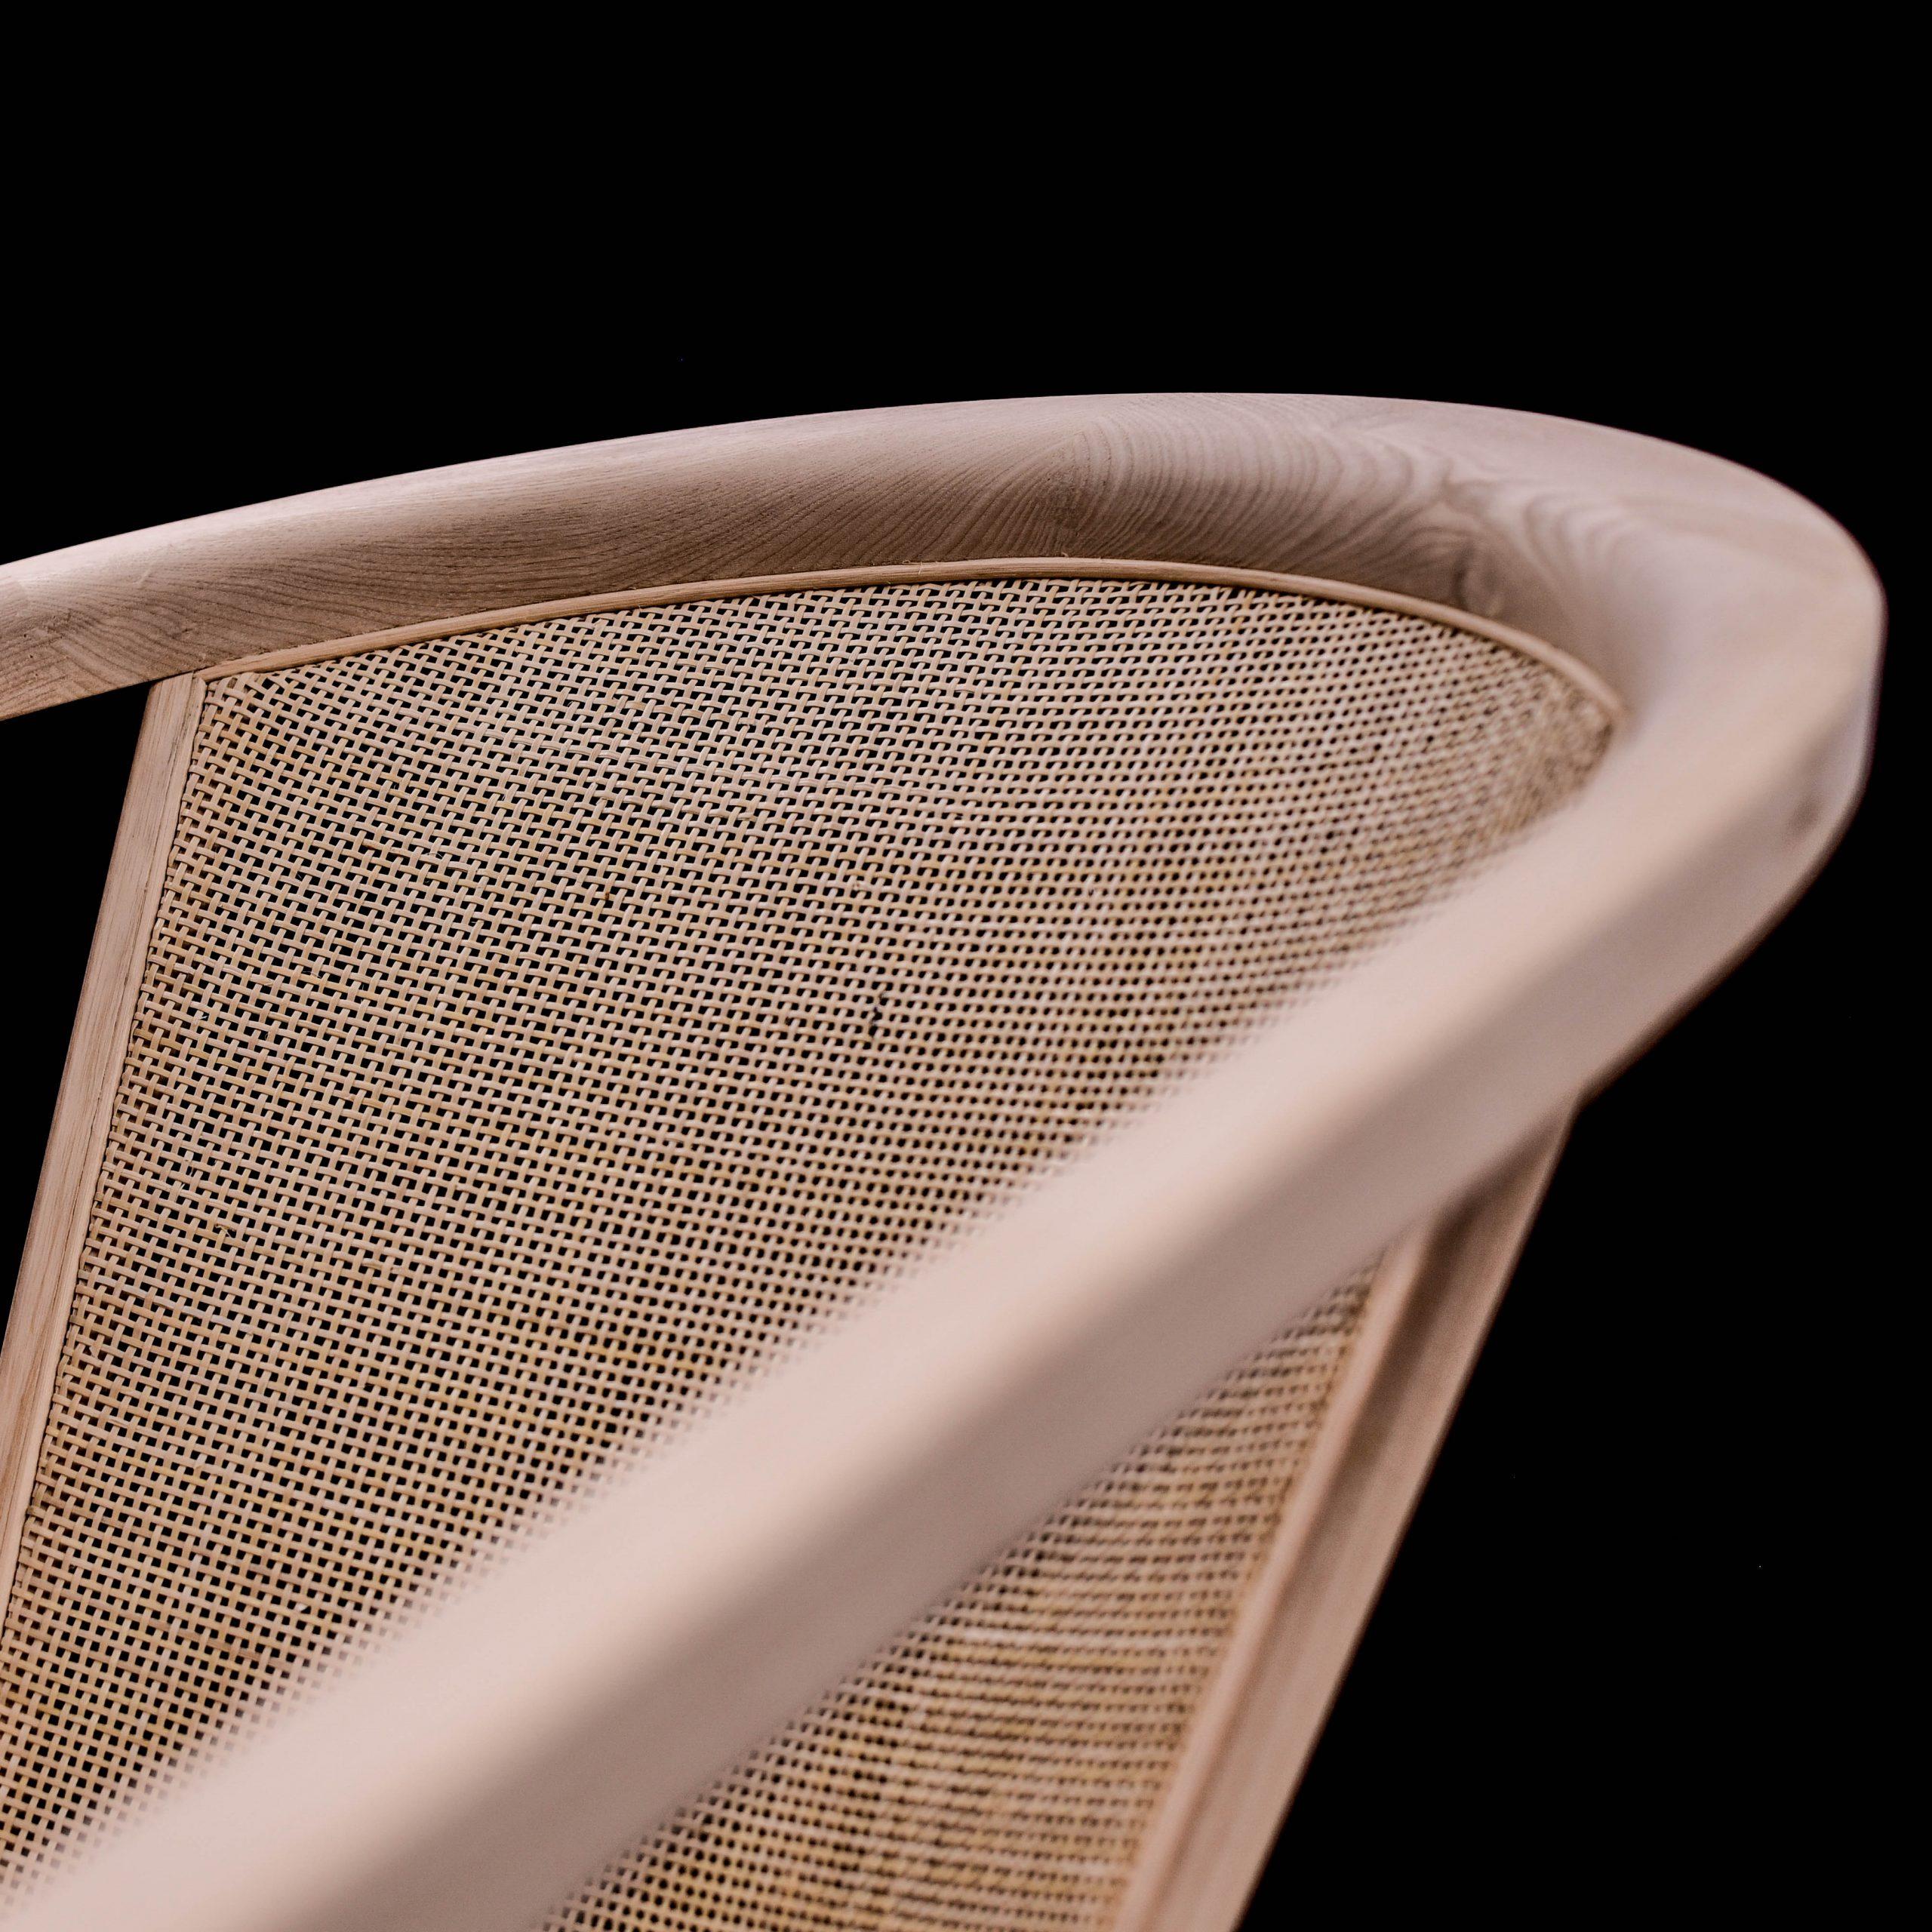 P.R Lounge Chair by Alexandre Caldas 1